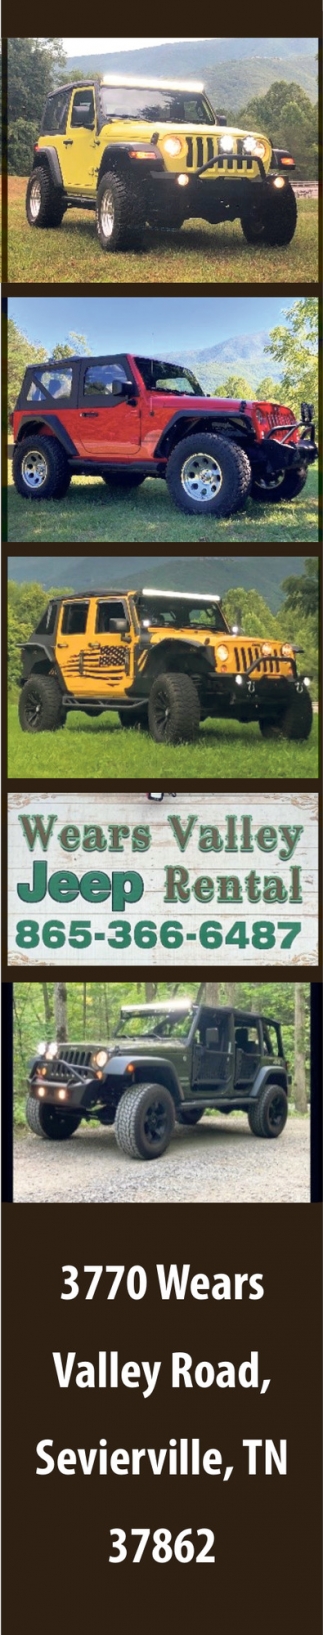 Wears Valley Jeep Rental